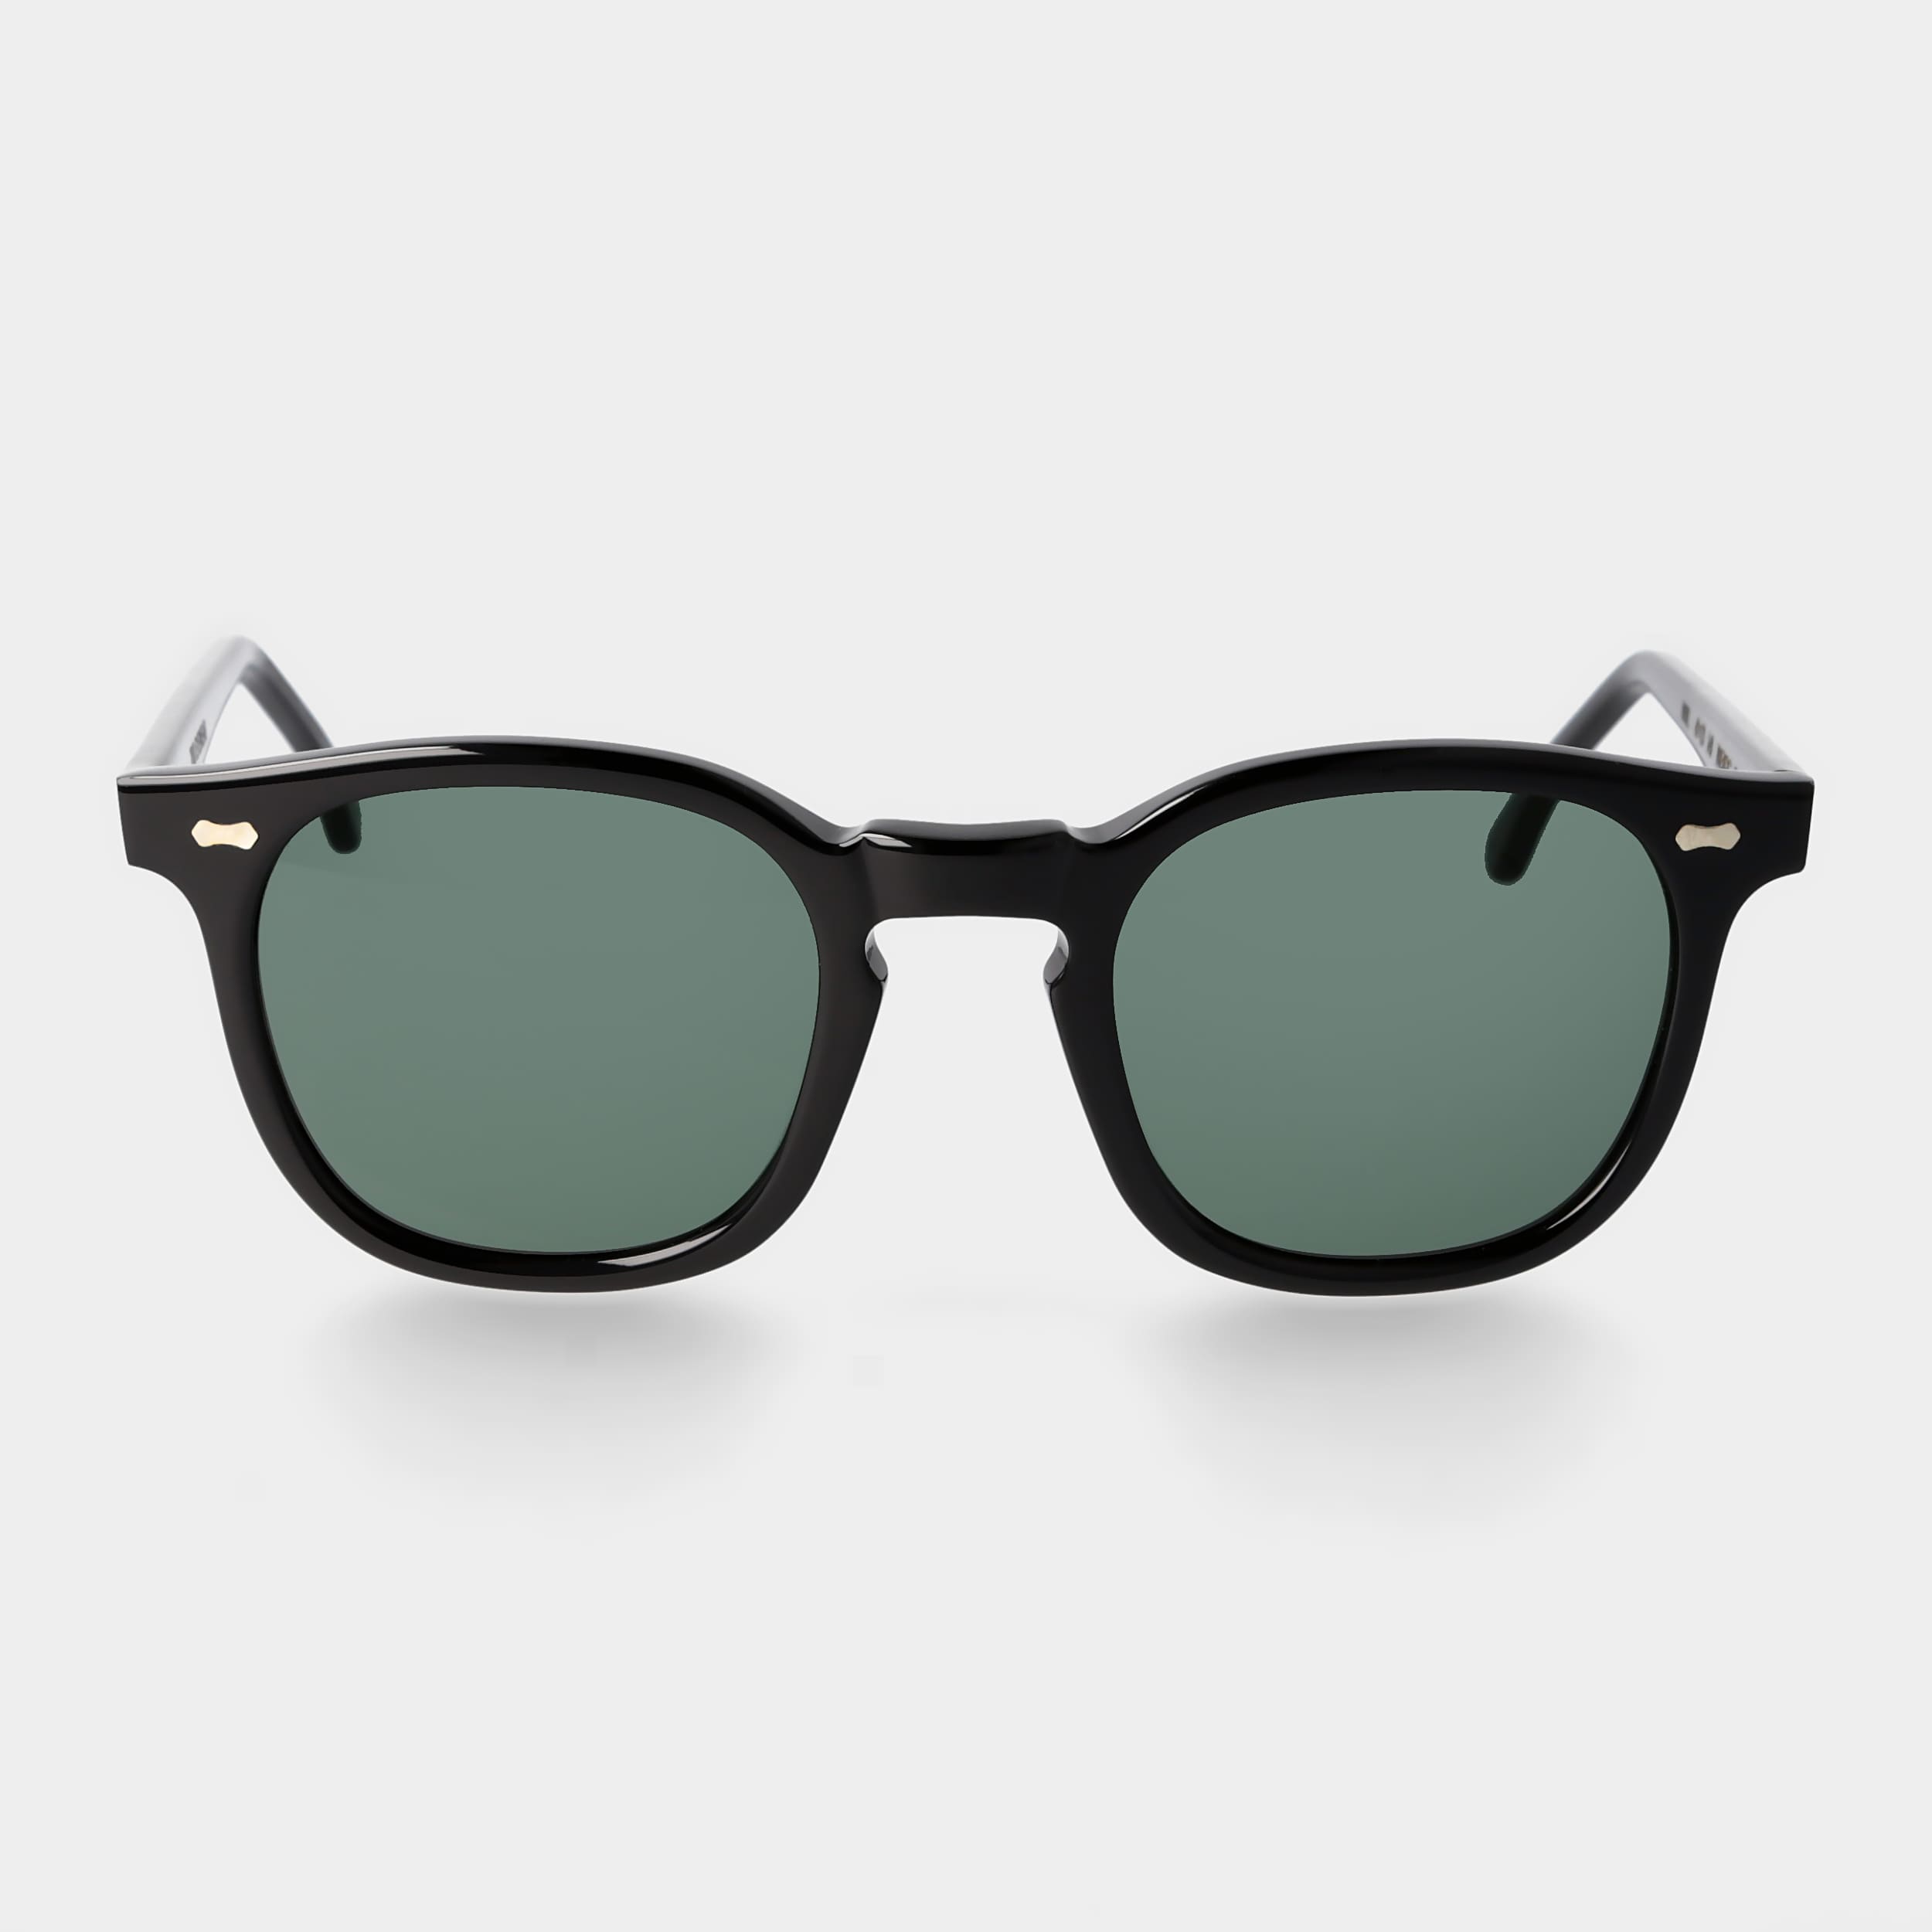 sunglasses-twill-eco-black-polarized-sustainable-tbd-eyewear-front